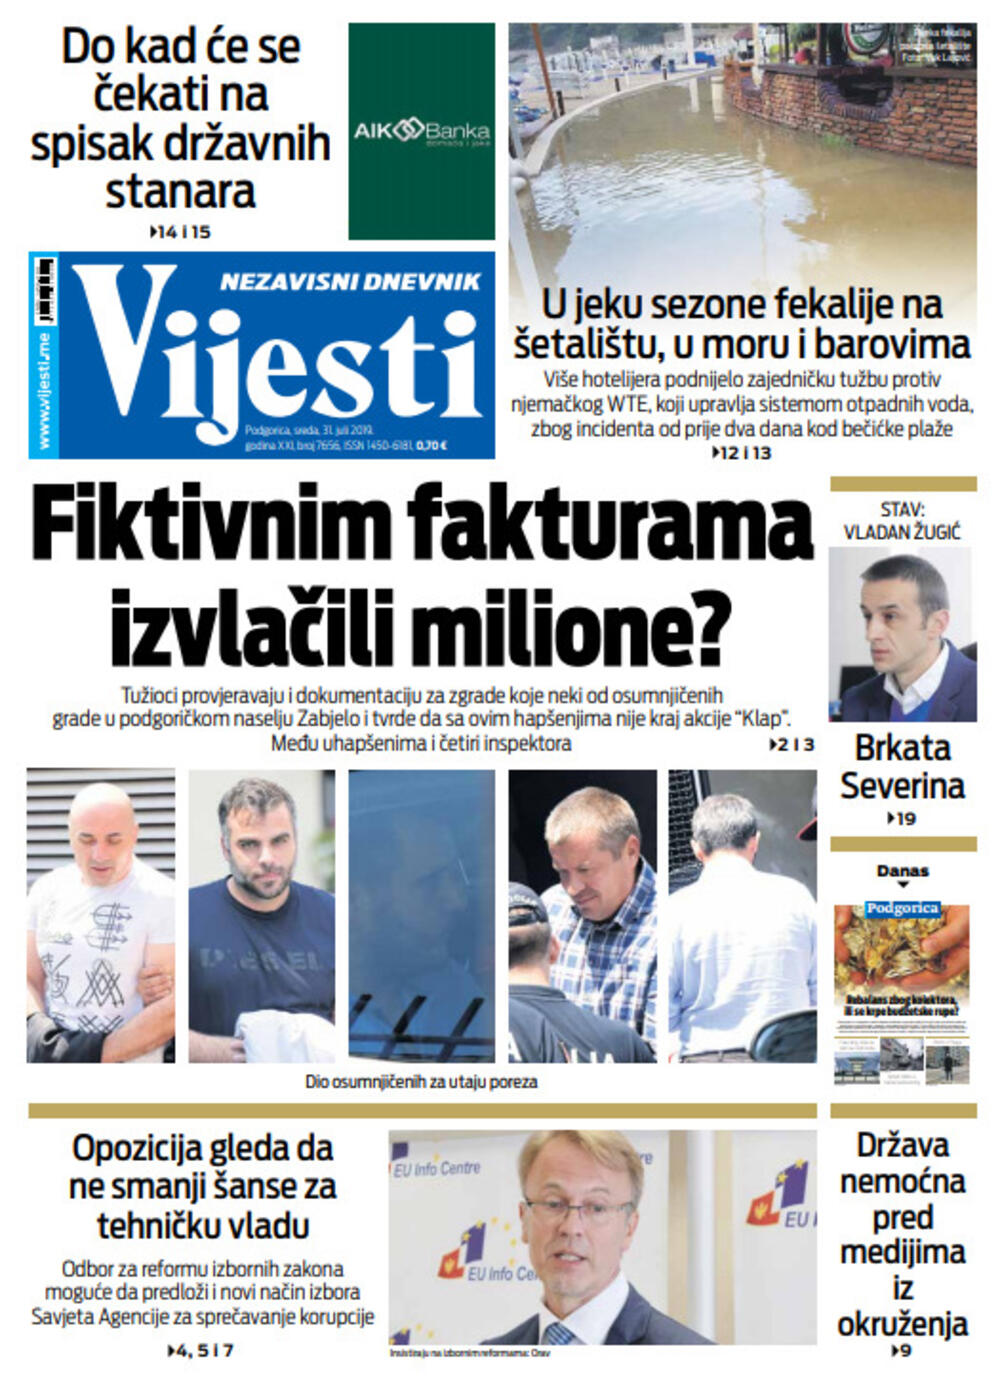 Naslovna strana "Vijesti" za 31. jul, Foto: Vijesti